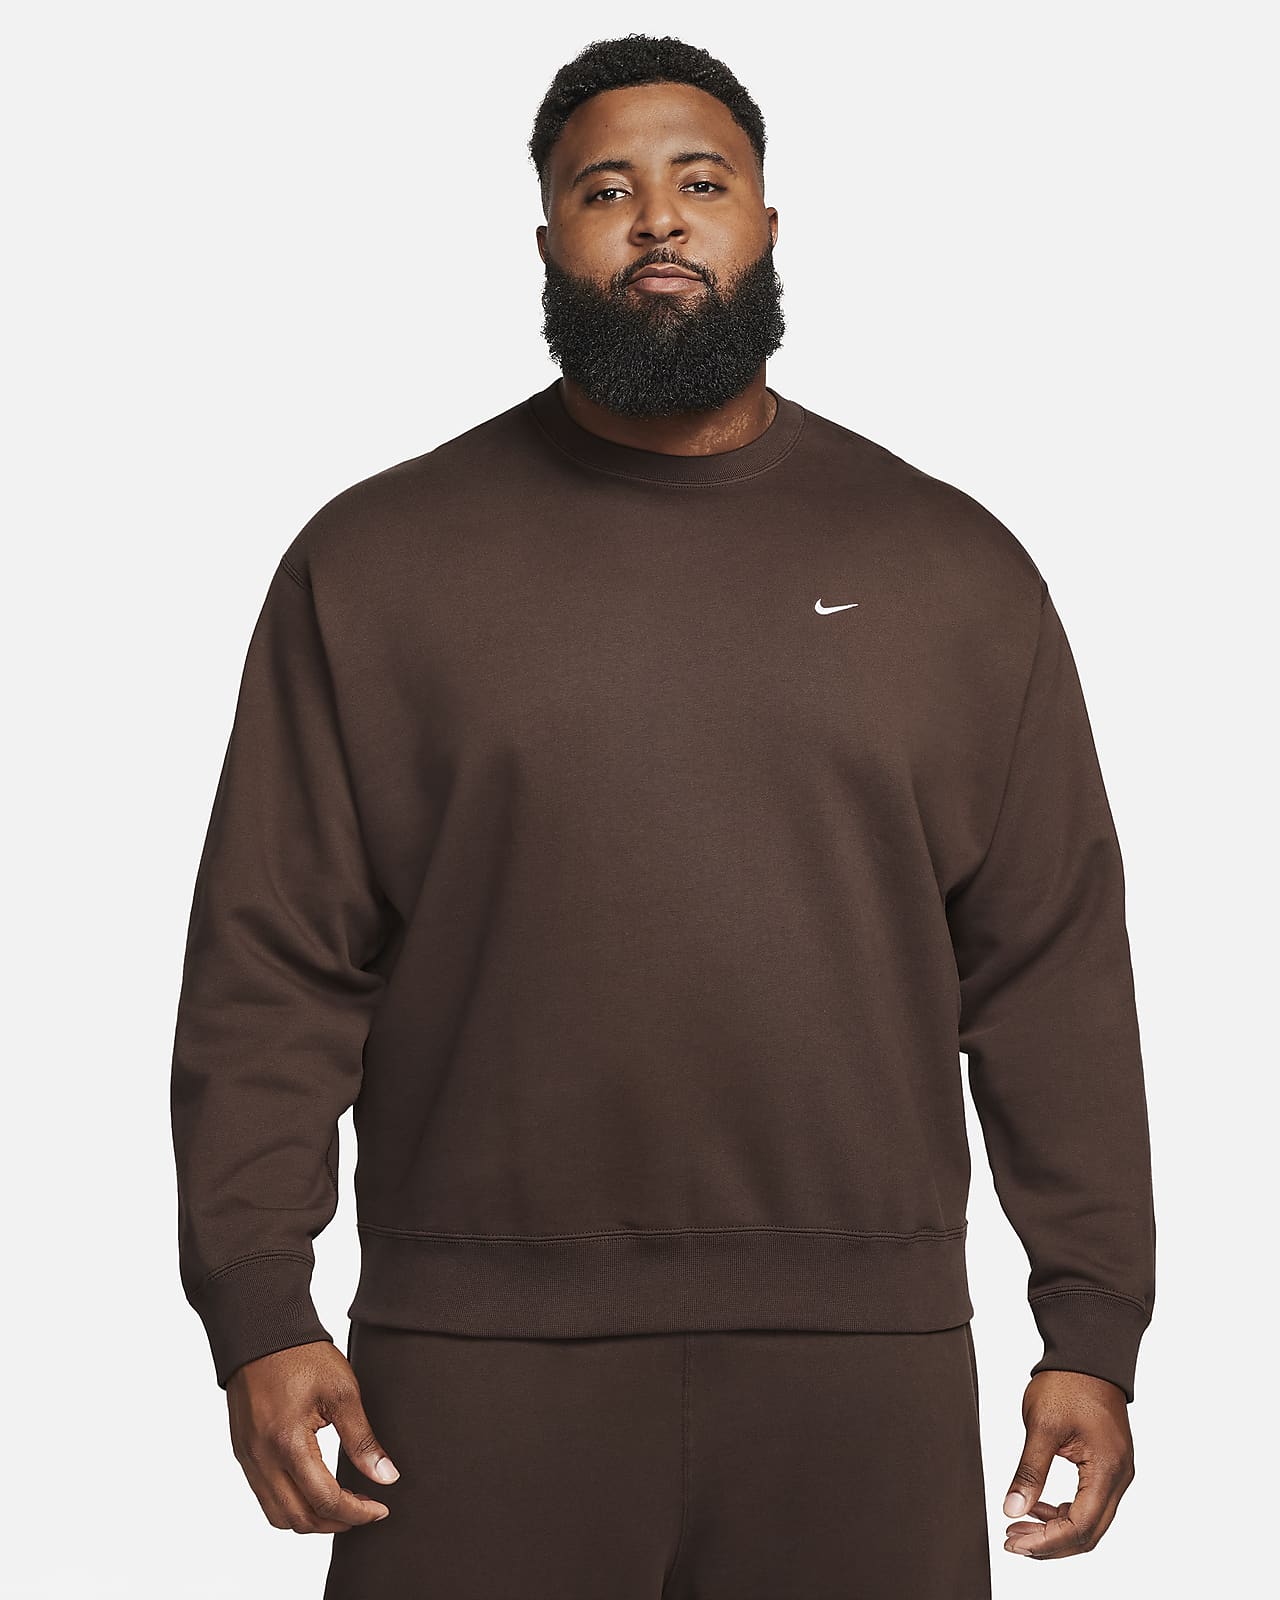 Nike Air Men's Fleece Crew-Neck Sweatshirt.